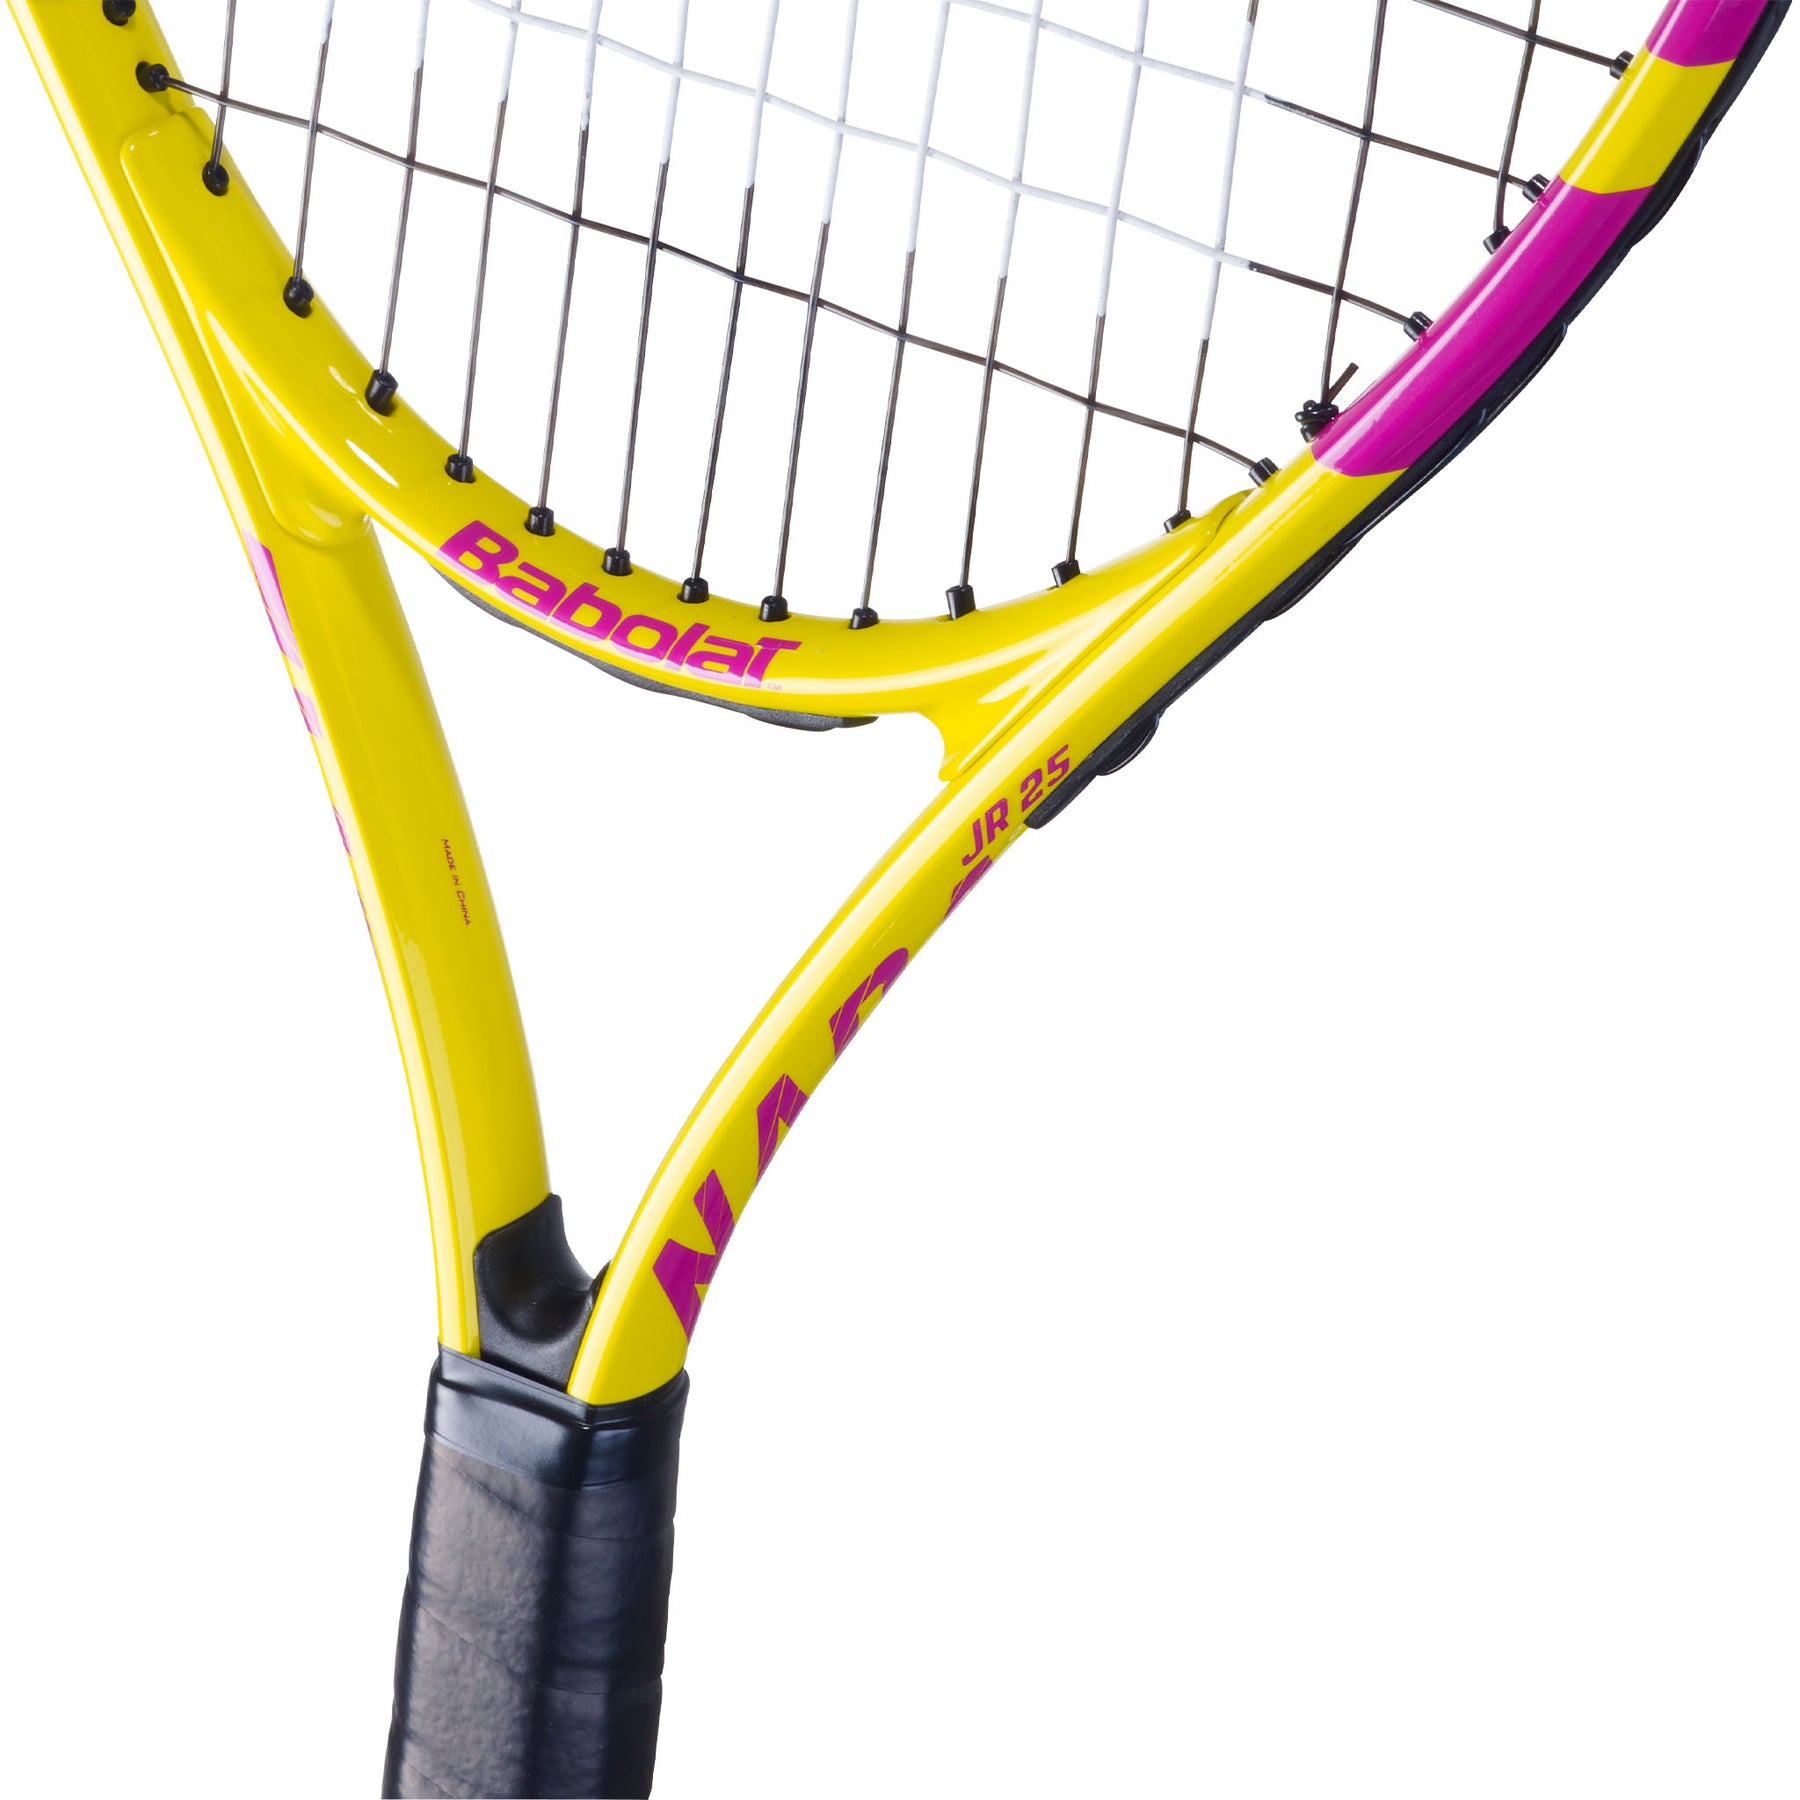 Babolat Nadal Junior 25 Tennis Racket